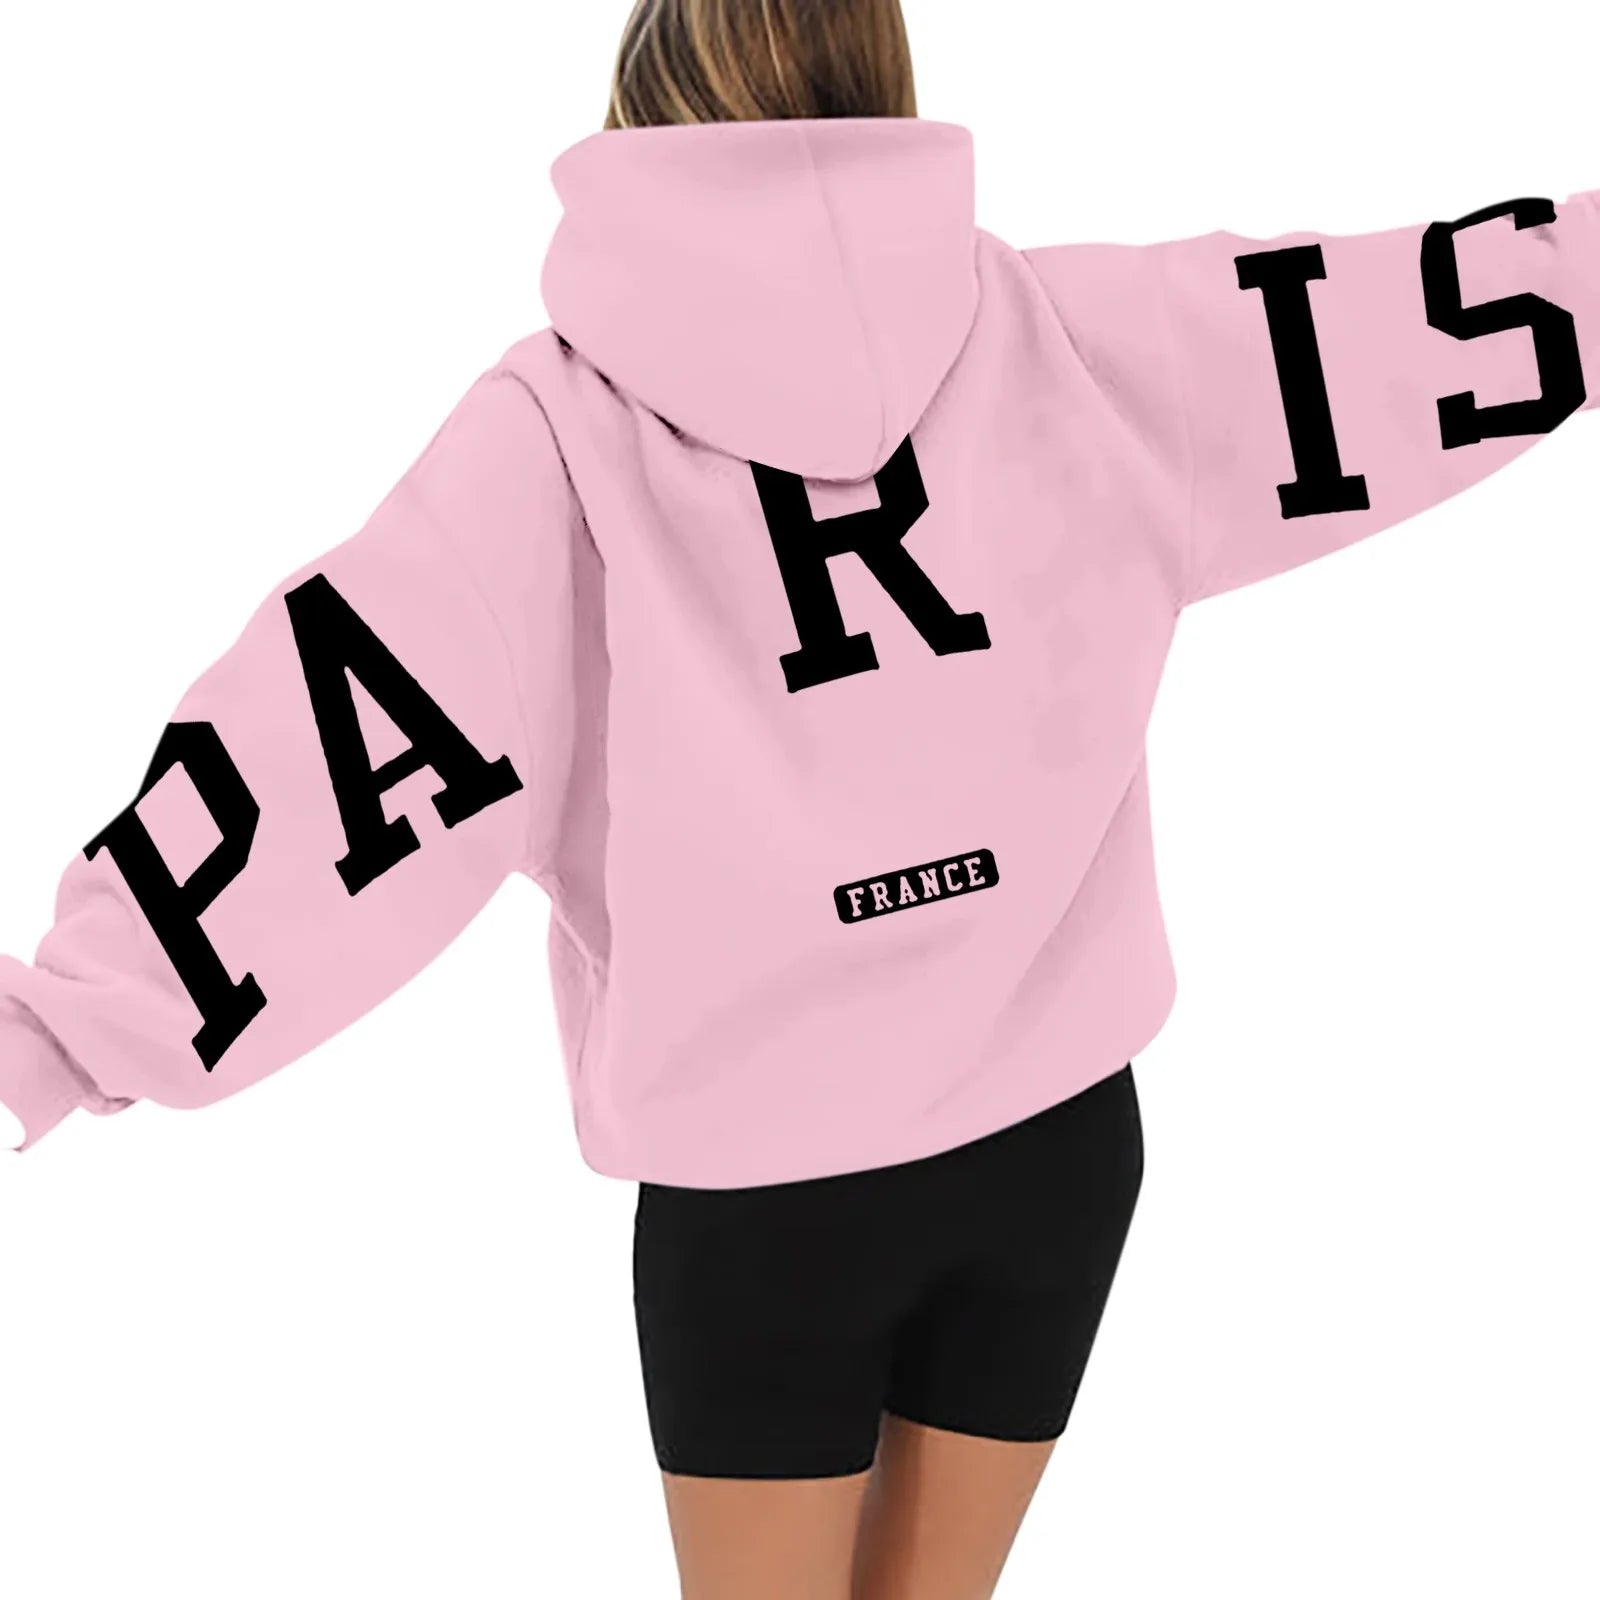 Paris France Printed Sweatshirt Hoodie for Women - True-Deals-Club